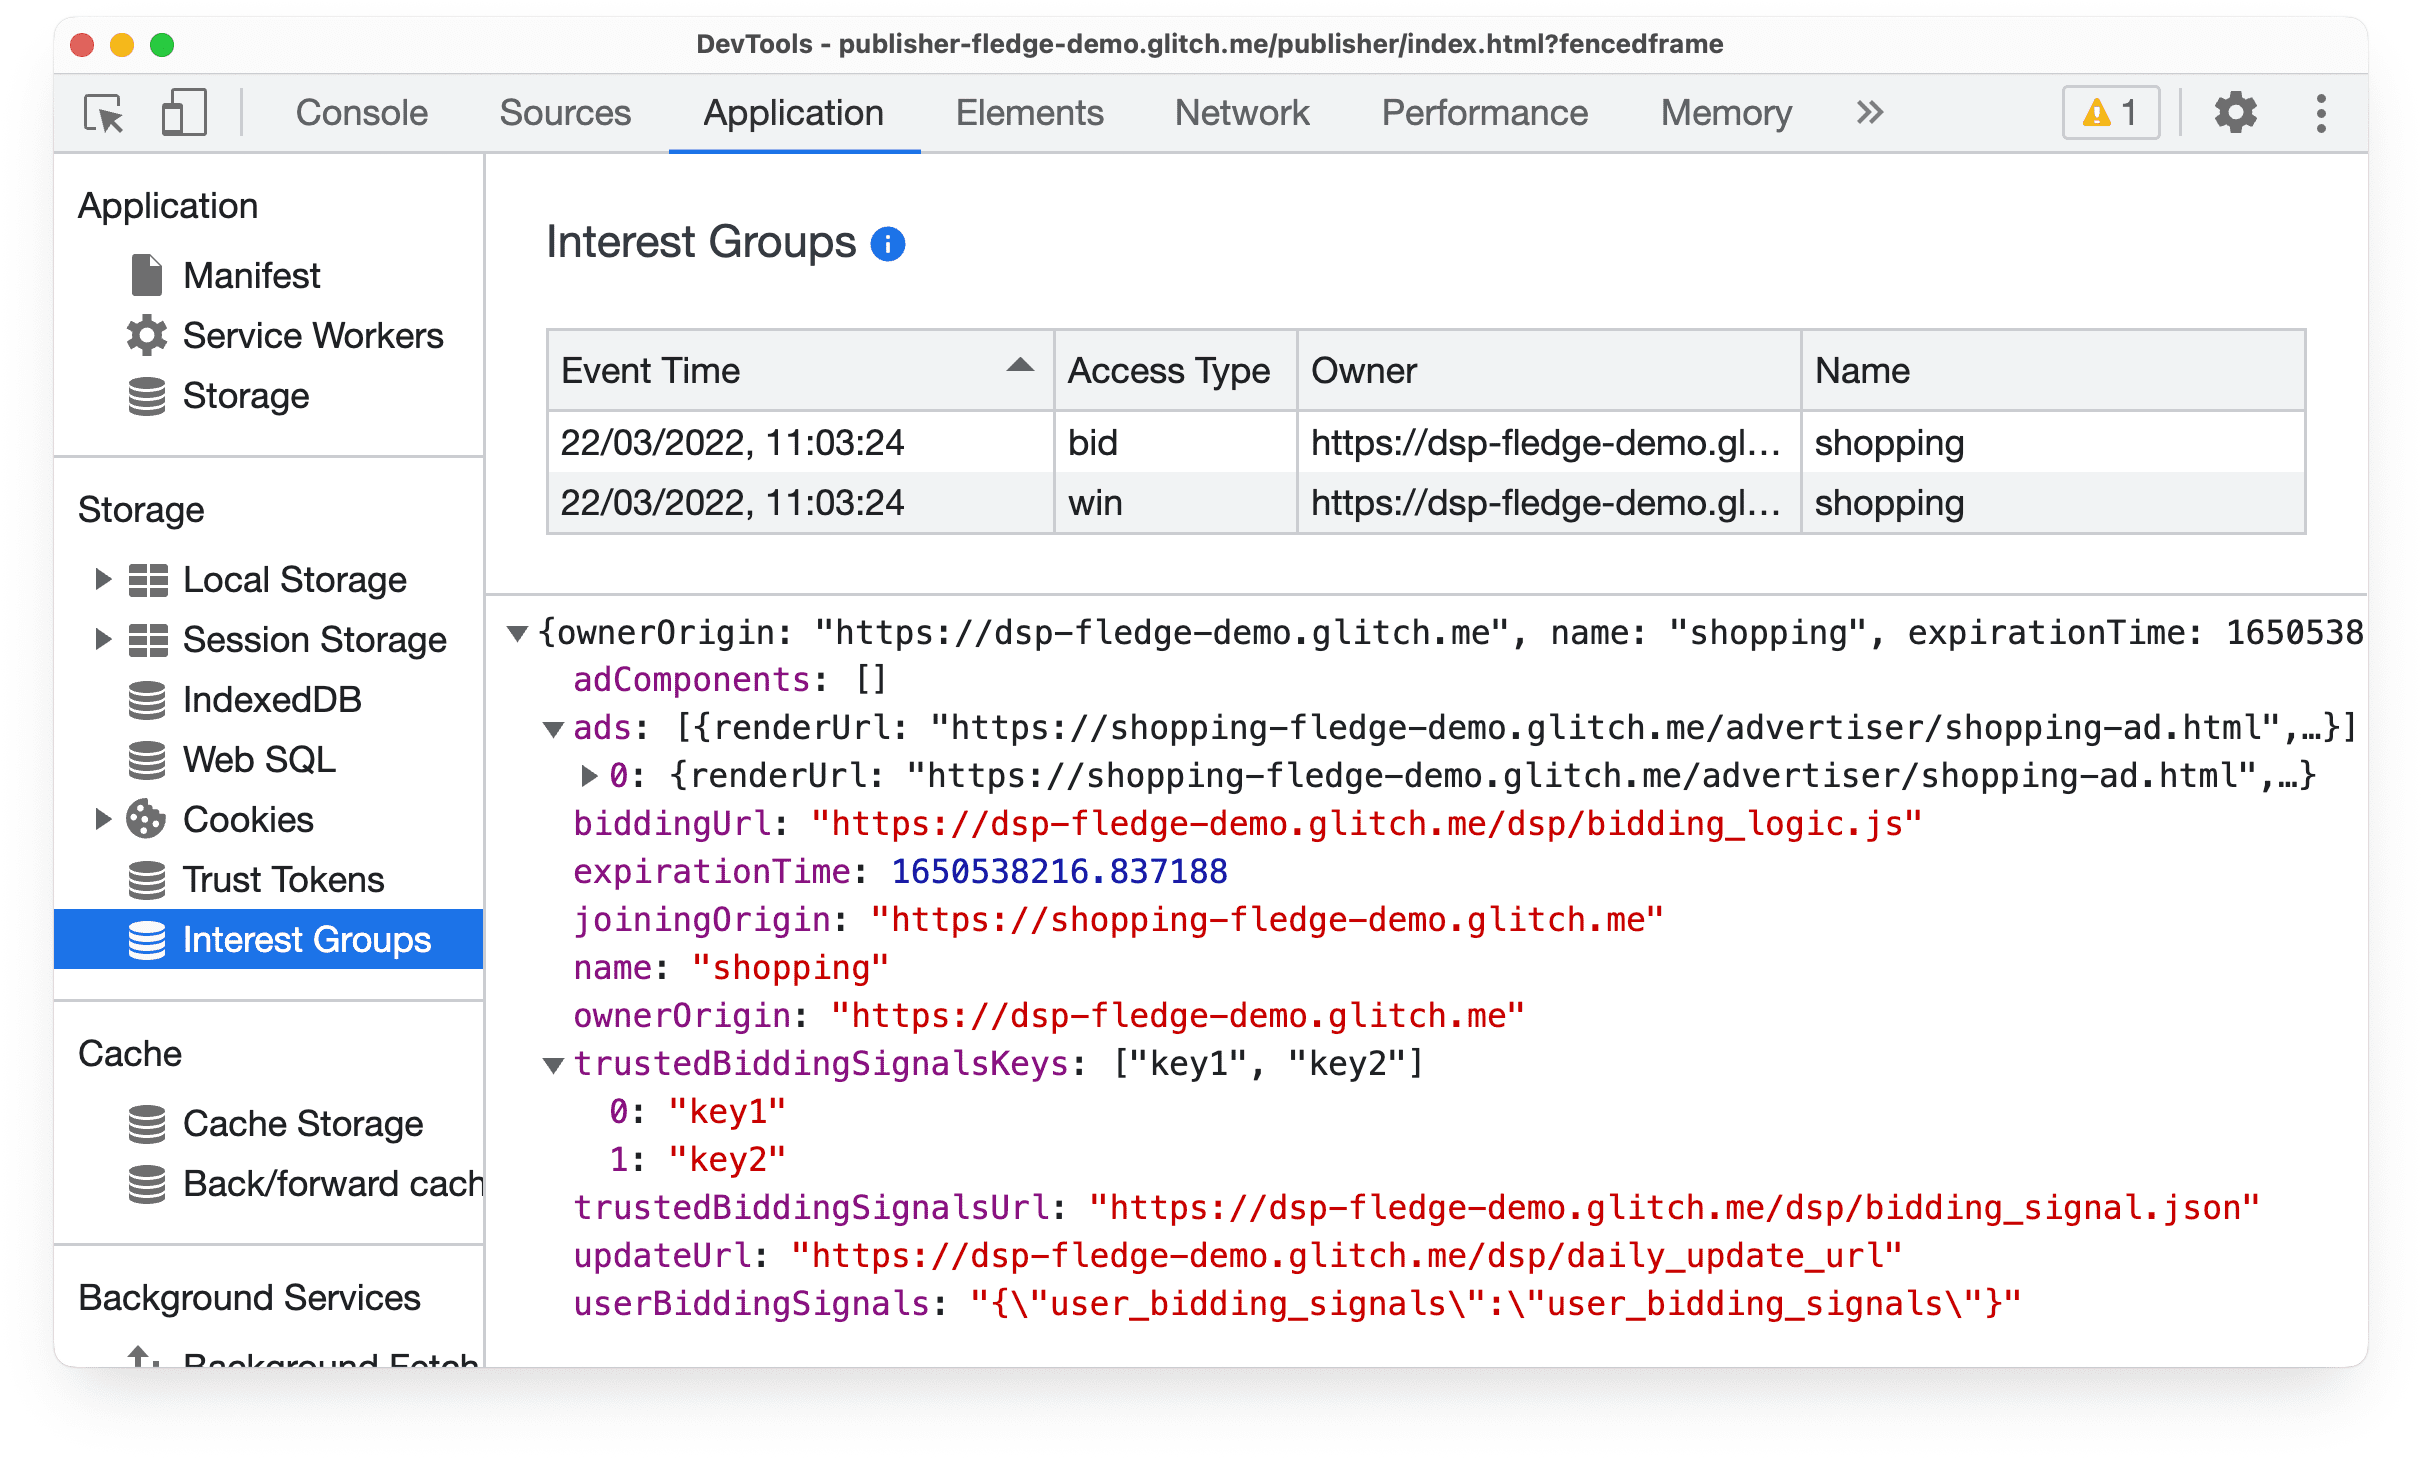 پانل برنامه DevTools در Chrome Canary، اطلاعاتی را در مورد پیشنهاد حراج API مخاطب محافظت شده و رویدادهای برنده نشان می دهد.